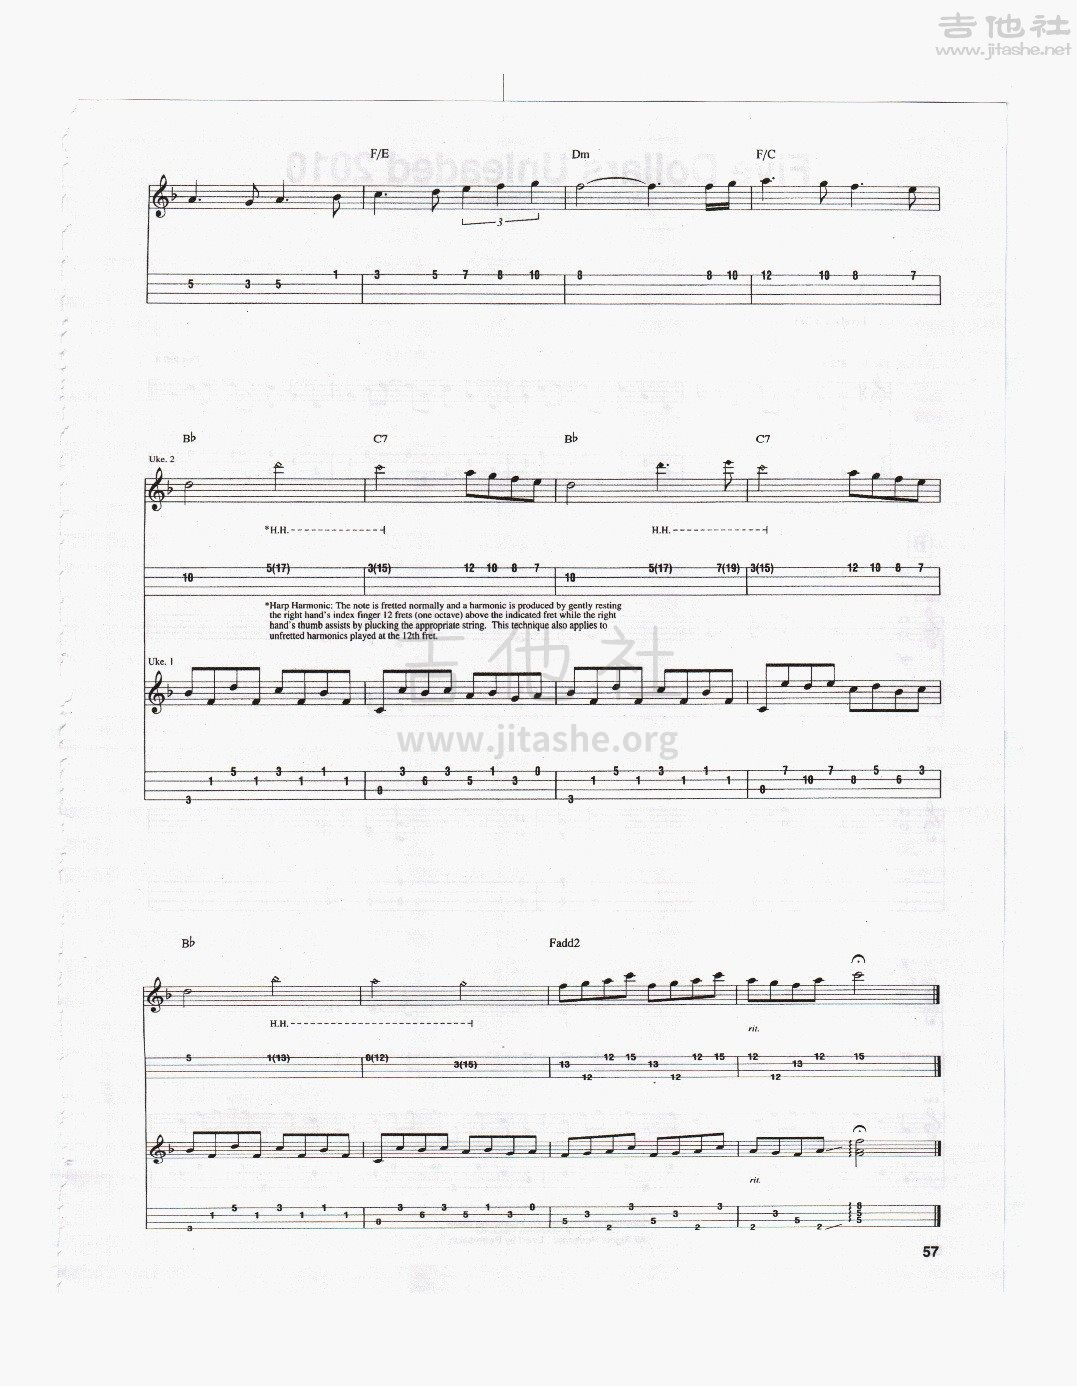 打印:Piano Forte吉他谱_Jake Shimabukuro(ジェイク・シマブクロ)_pianoforte6.jpg